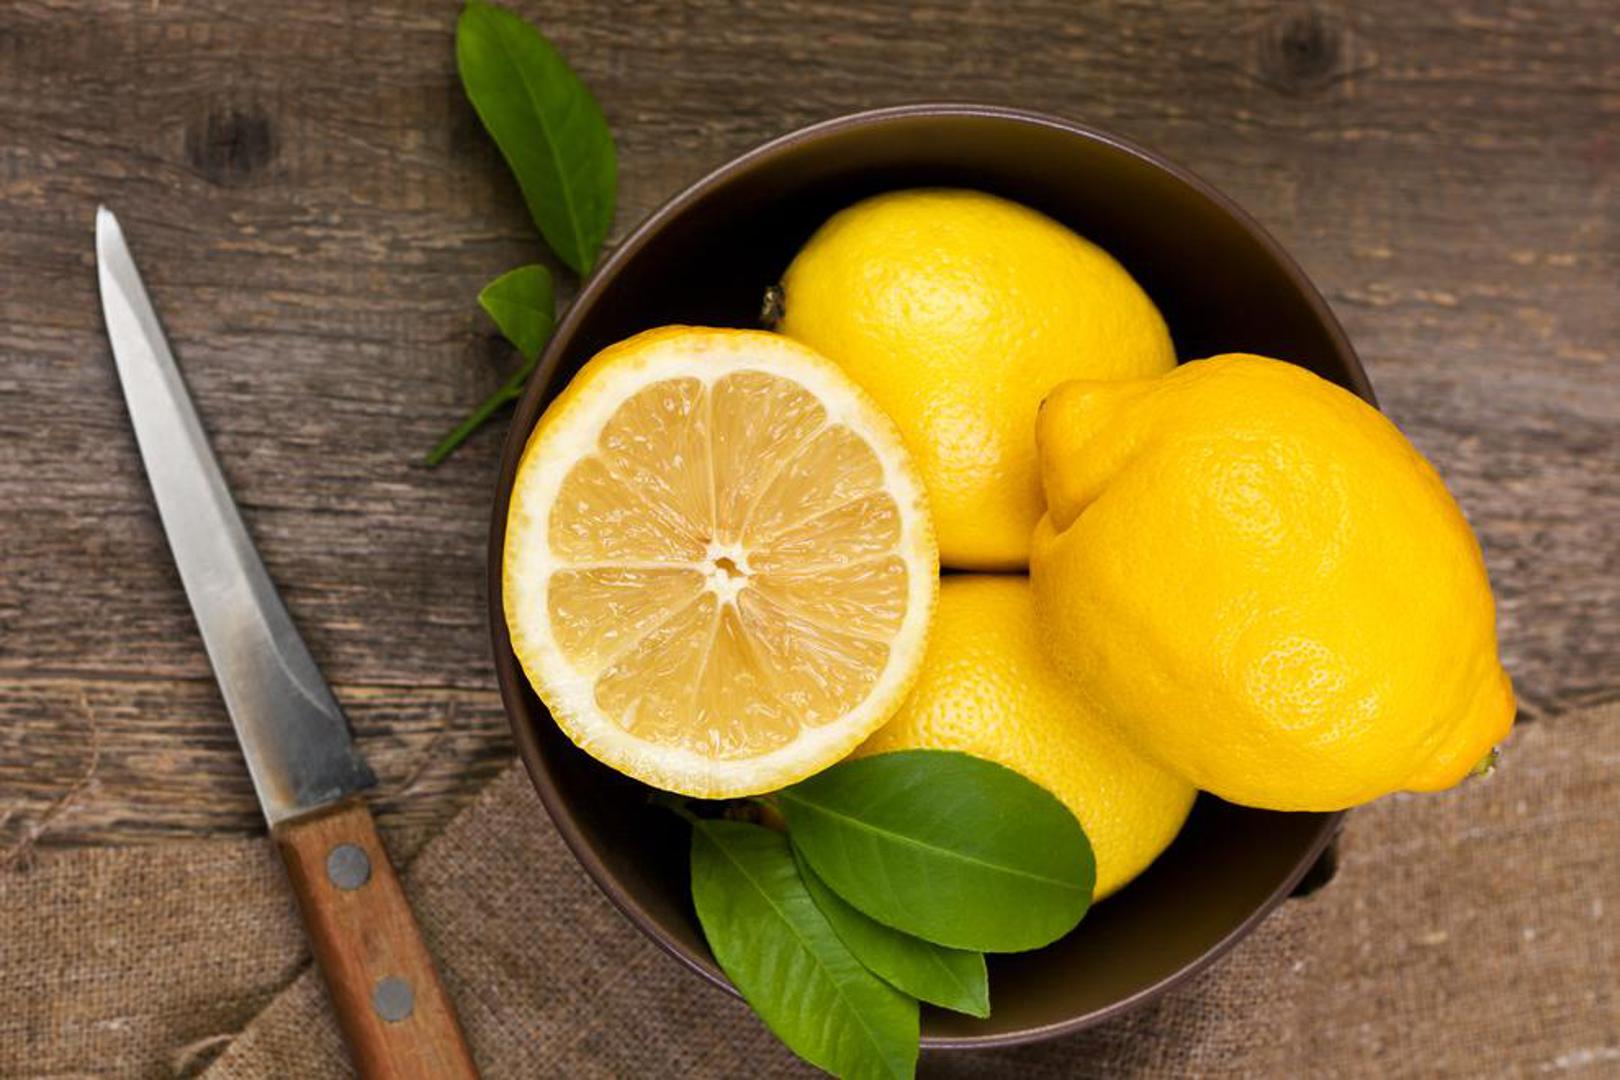 Kada ste loše raspoloženi pomirišite neko citrusno voće. Miris vitamina C podiže energiju. Miris limuna snižava razinu stresa. Možete i iskoristiti limun za čišćenje površina u vašem domu umjesto industrijskih proizvoda koji sadrže štetne sastojke. 